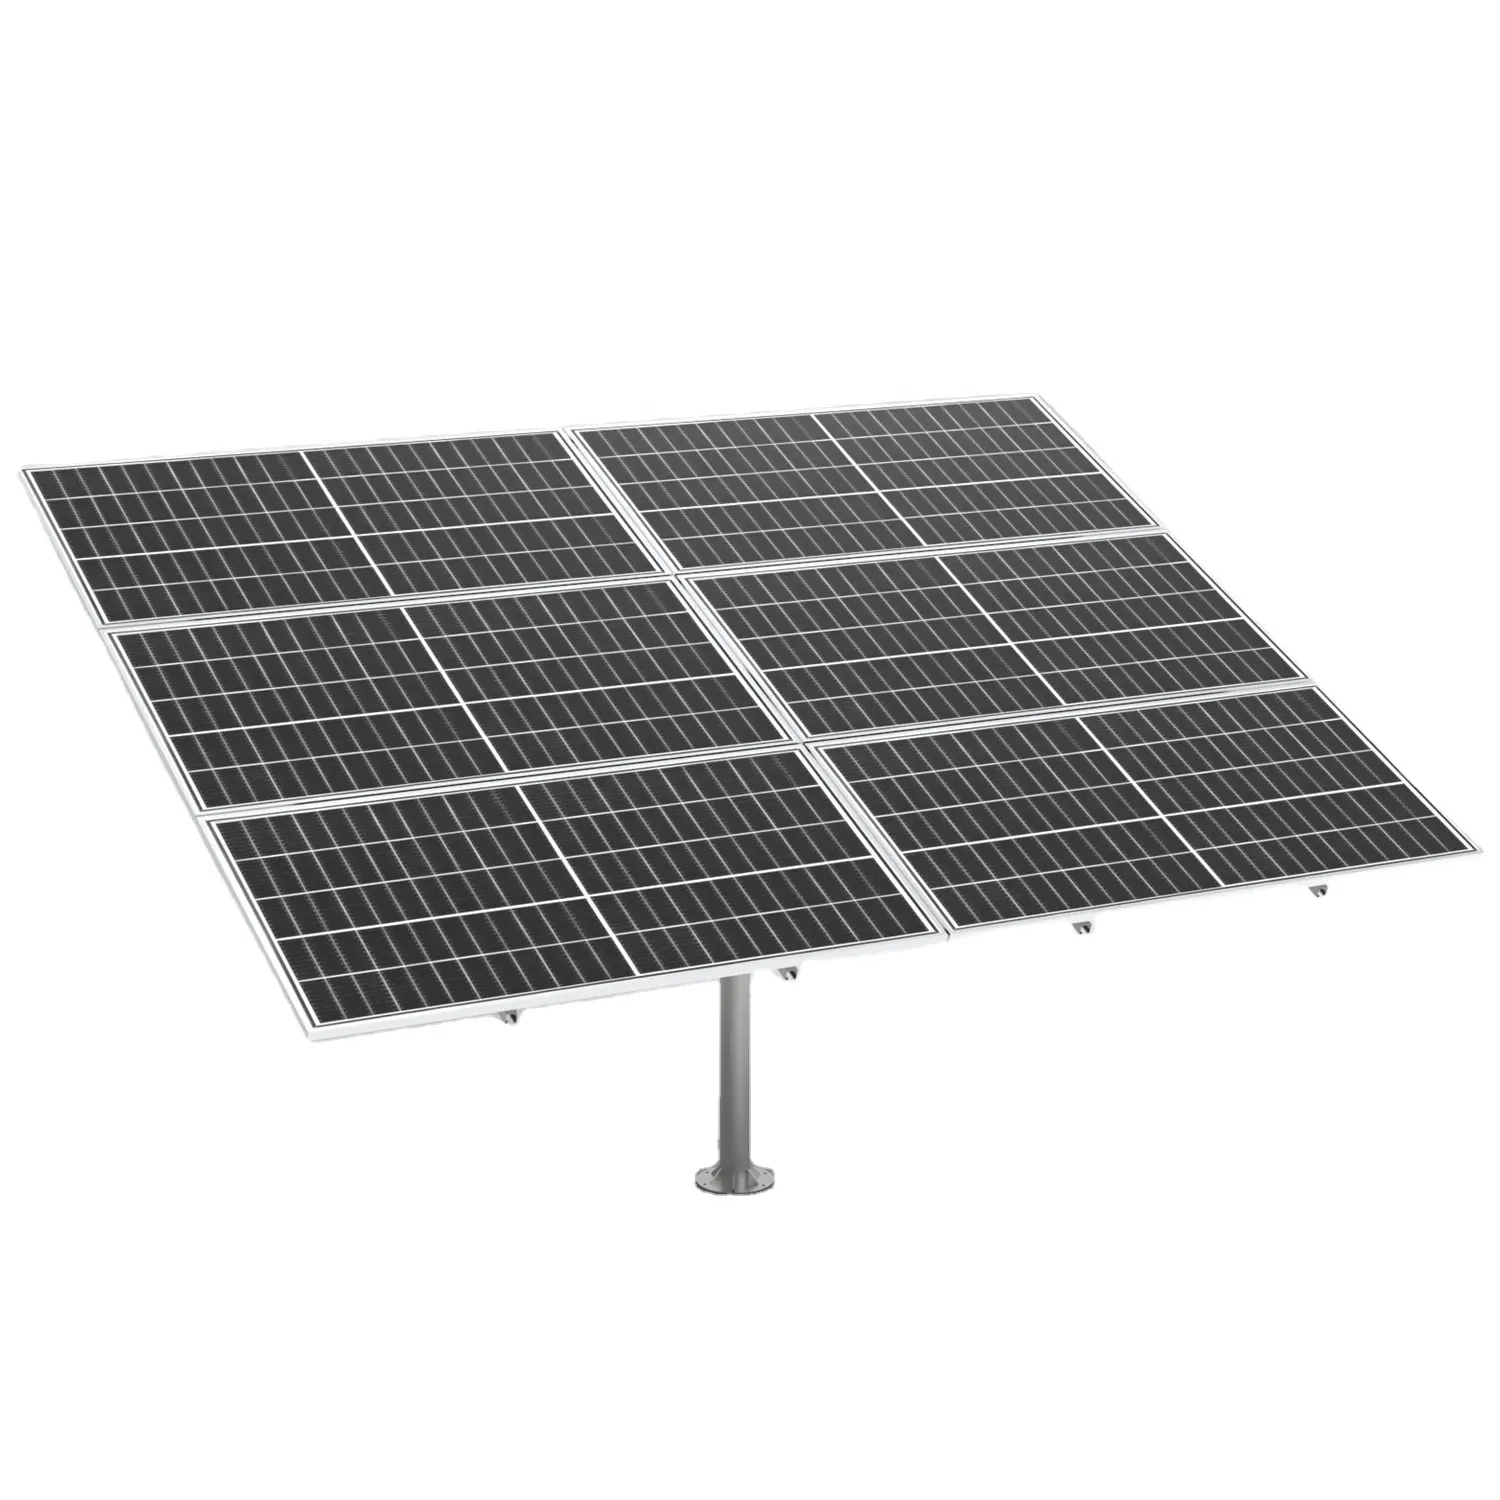 Sistem pelacakan PV surya 2 sumbu cerdas, teknologi pelacak tenaga surya inovatif untuk peningkatan kinerja Panel surya